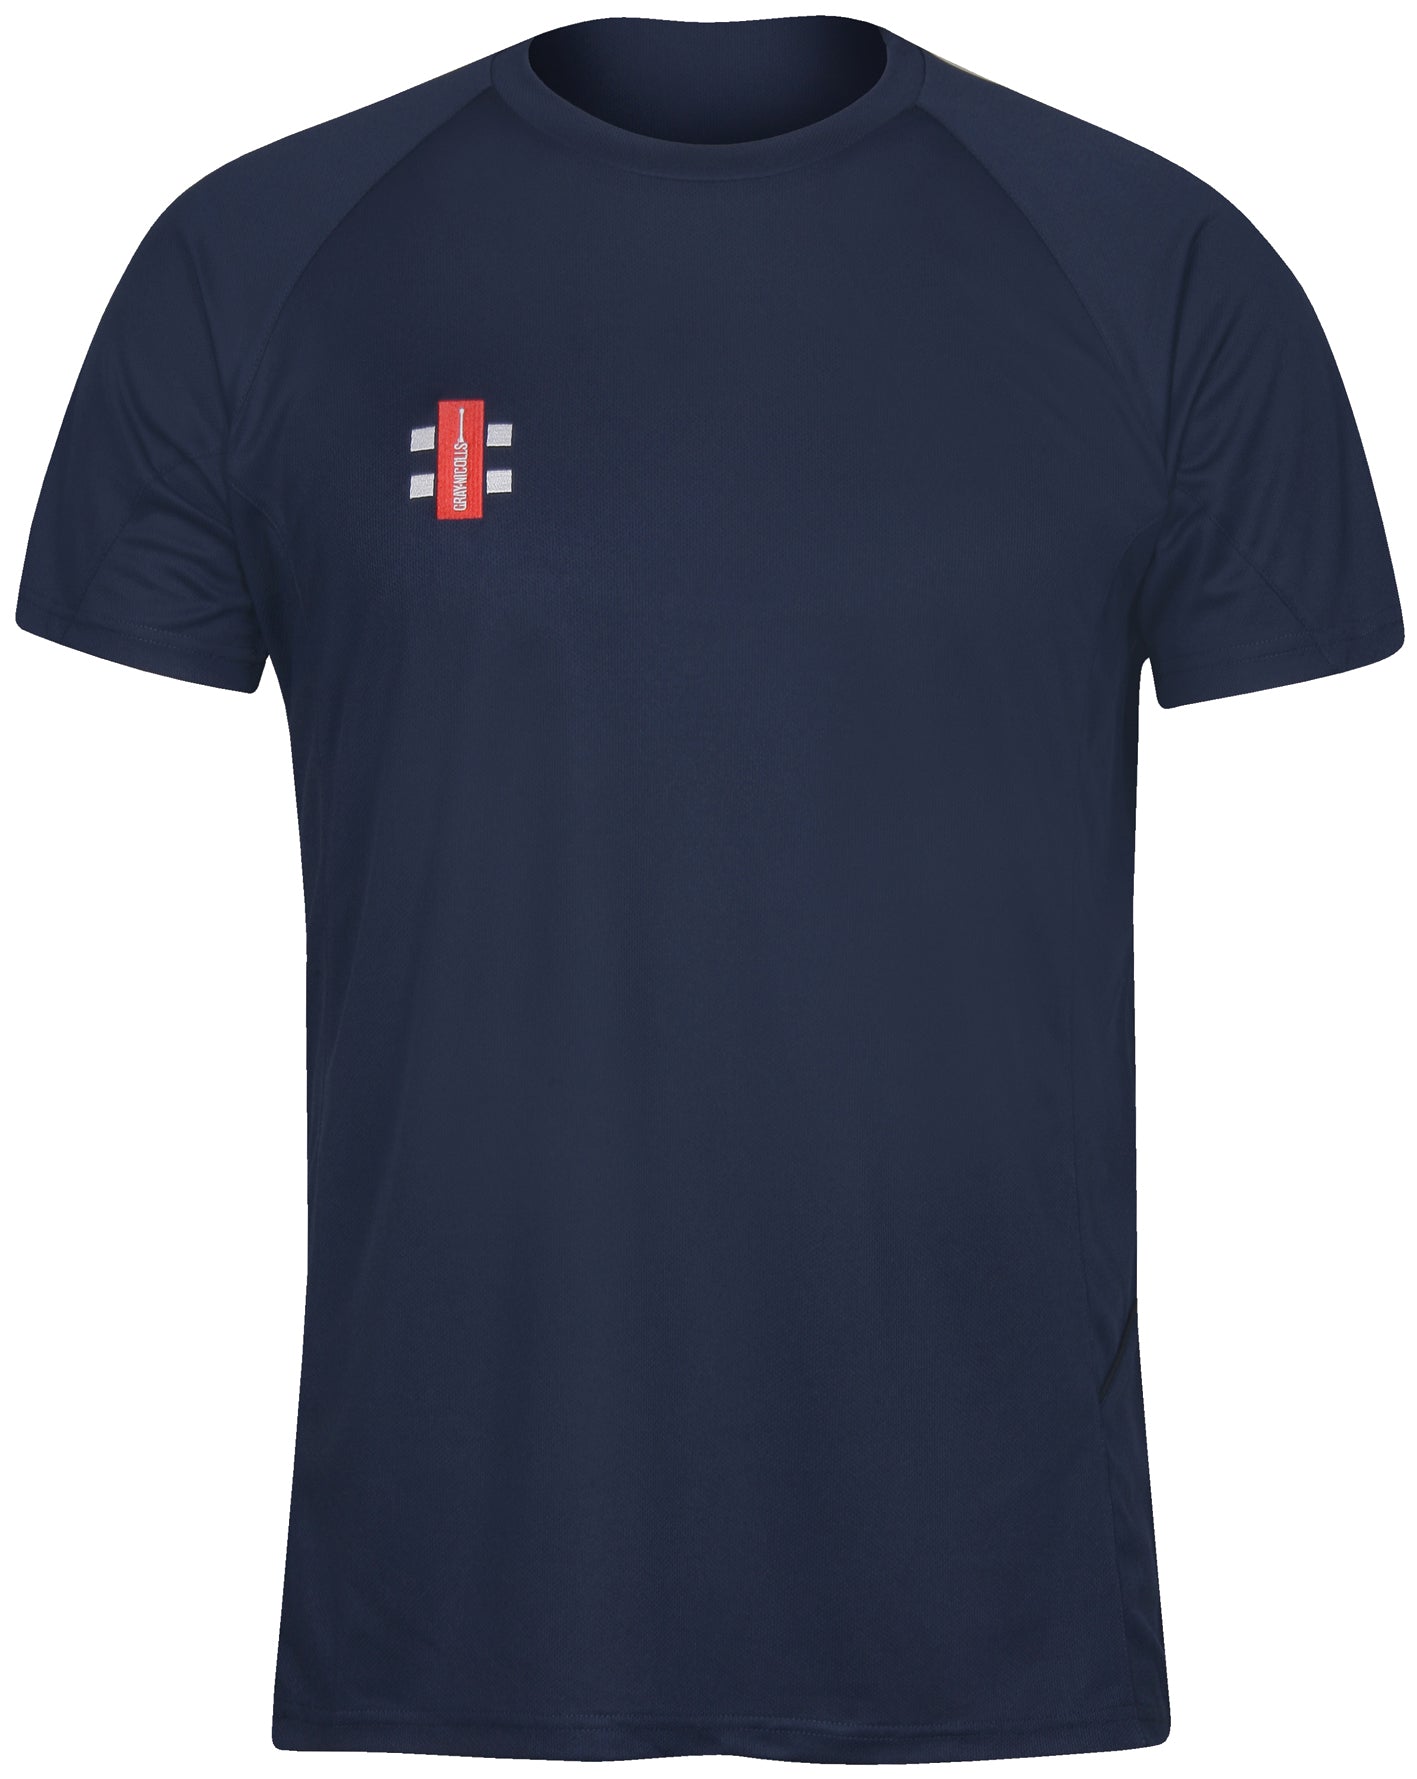 Gray-Nicolls Matrix S/S Tee Shirt-Navy-Bruntsfield Sports Online